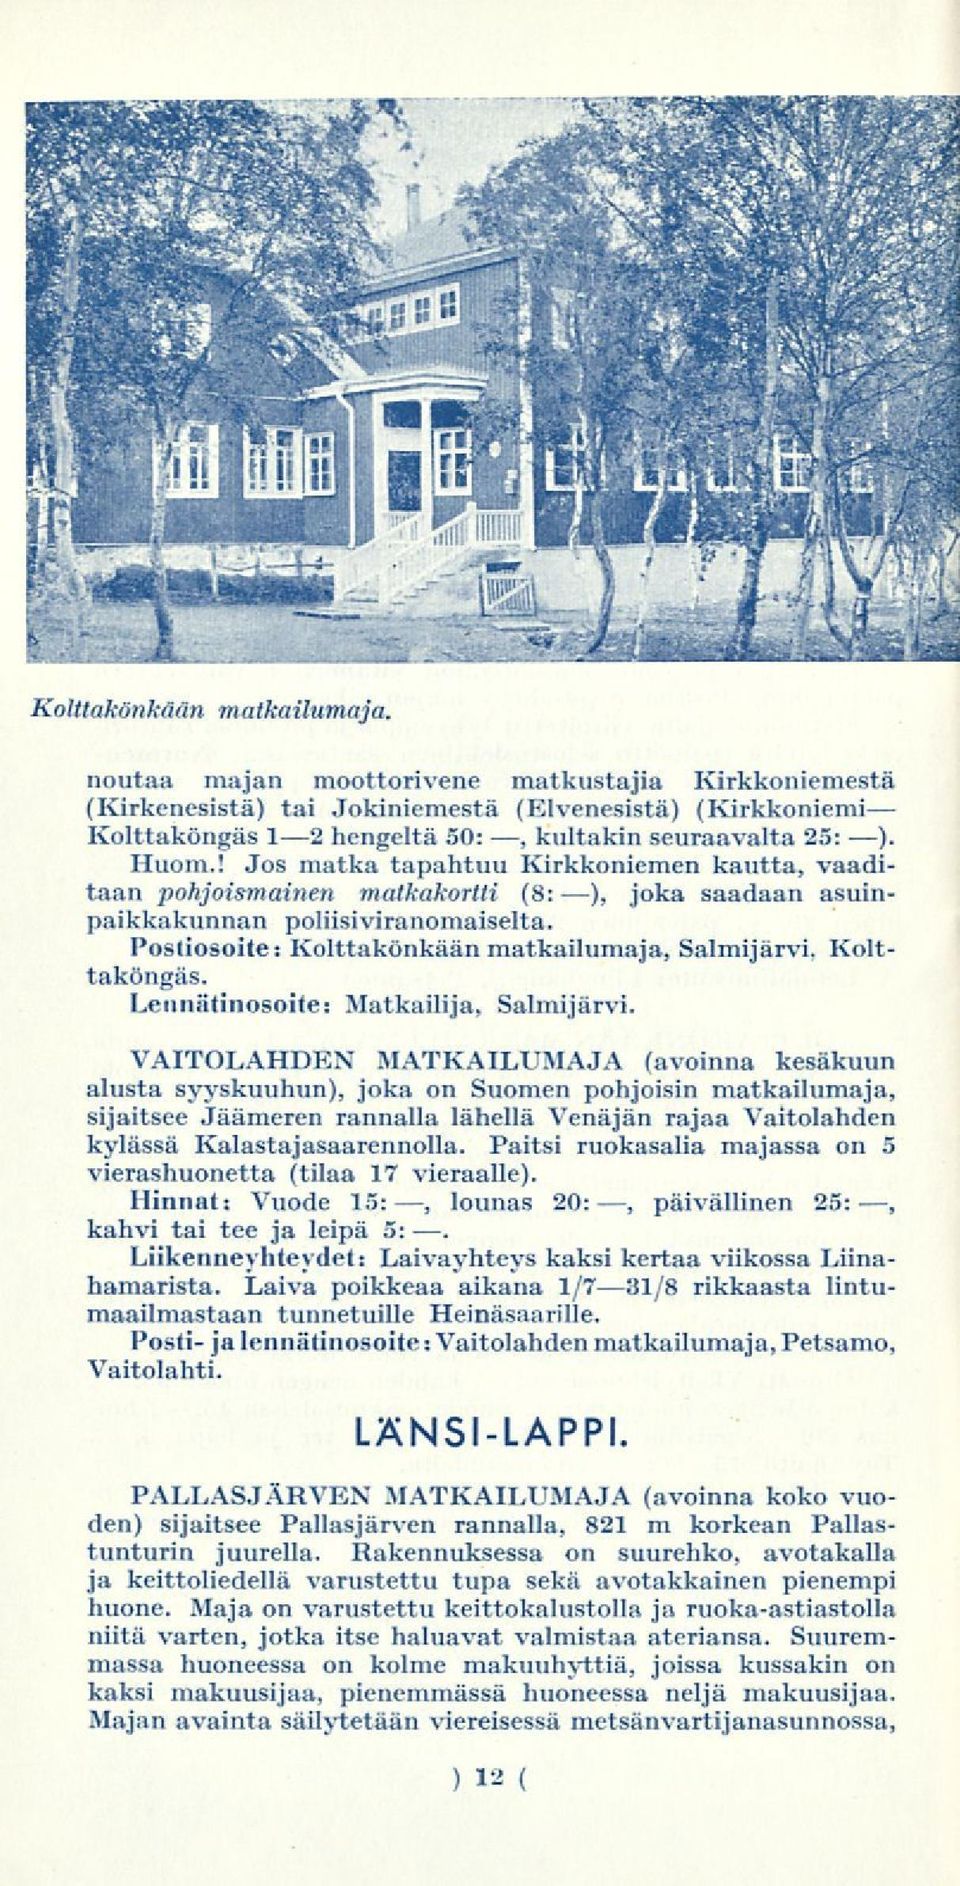 Kolttaköngäs. Lennätinosoite: Matkailija, Salmijärvi.